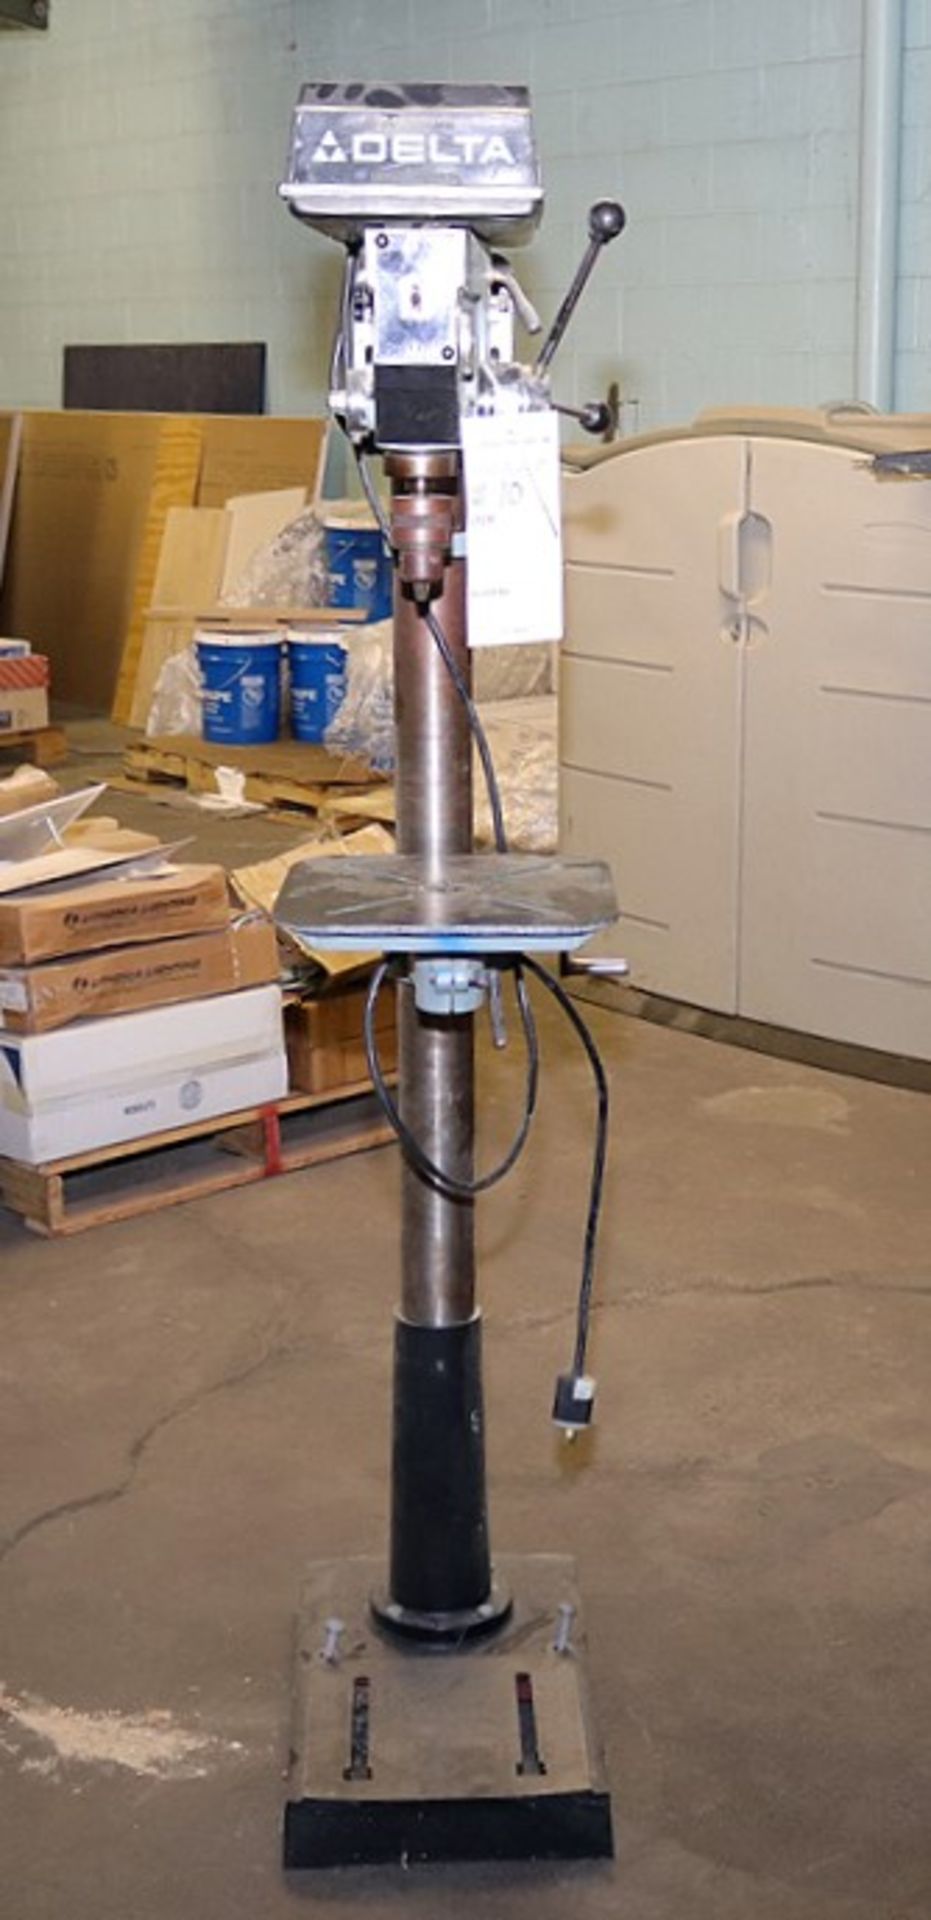 Delta Model 17-900 Floor Model Drill Press